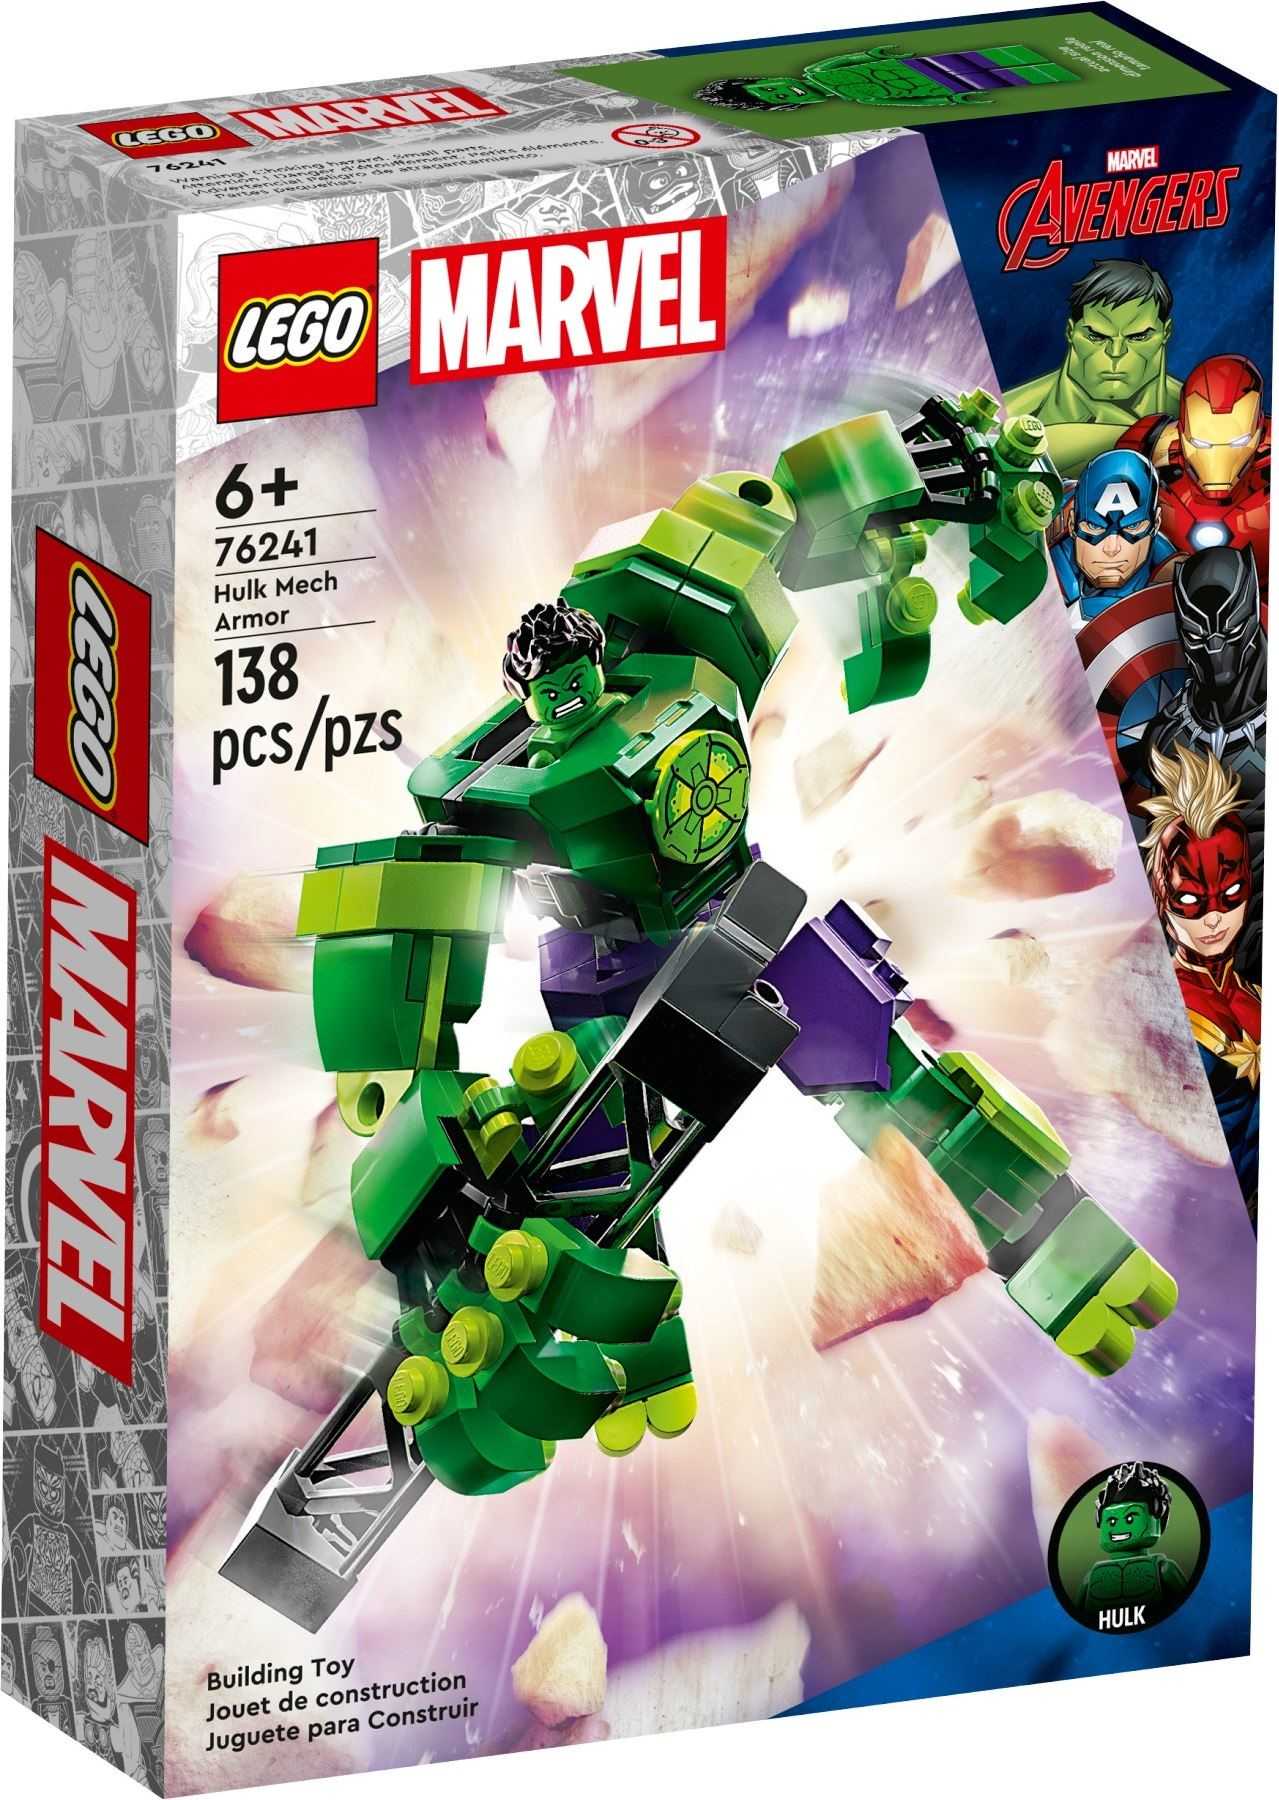 【電積系@北投】LEGO 76241 Hulk Mech Armor